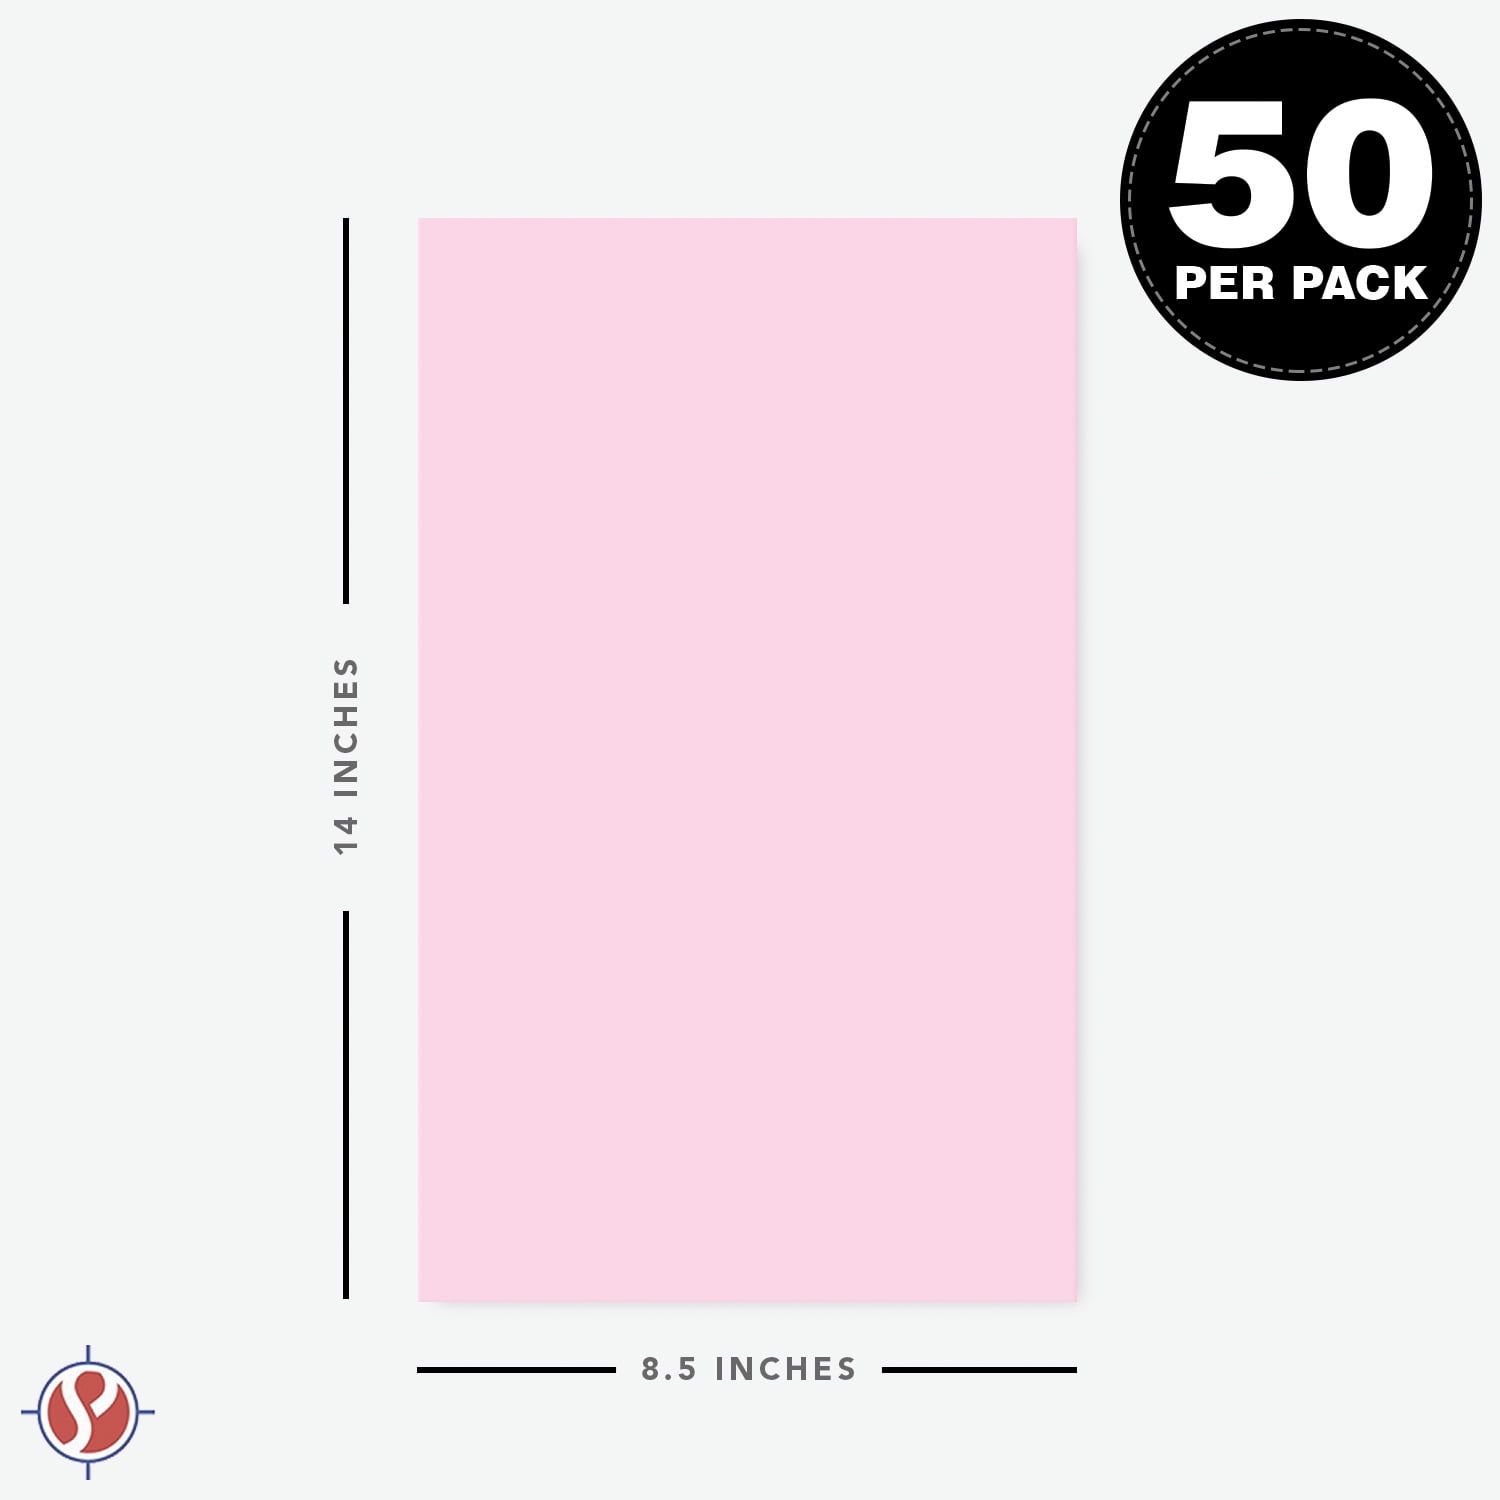 Ultra Fuscia/Hot Pink - Bright Colored Paper 24lb. Size 8.5 x 14 Legal / Menu Size 50 per Pack